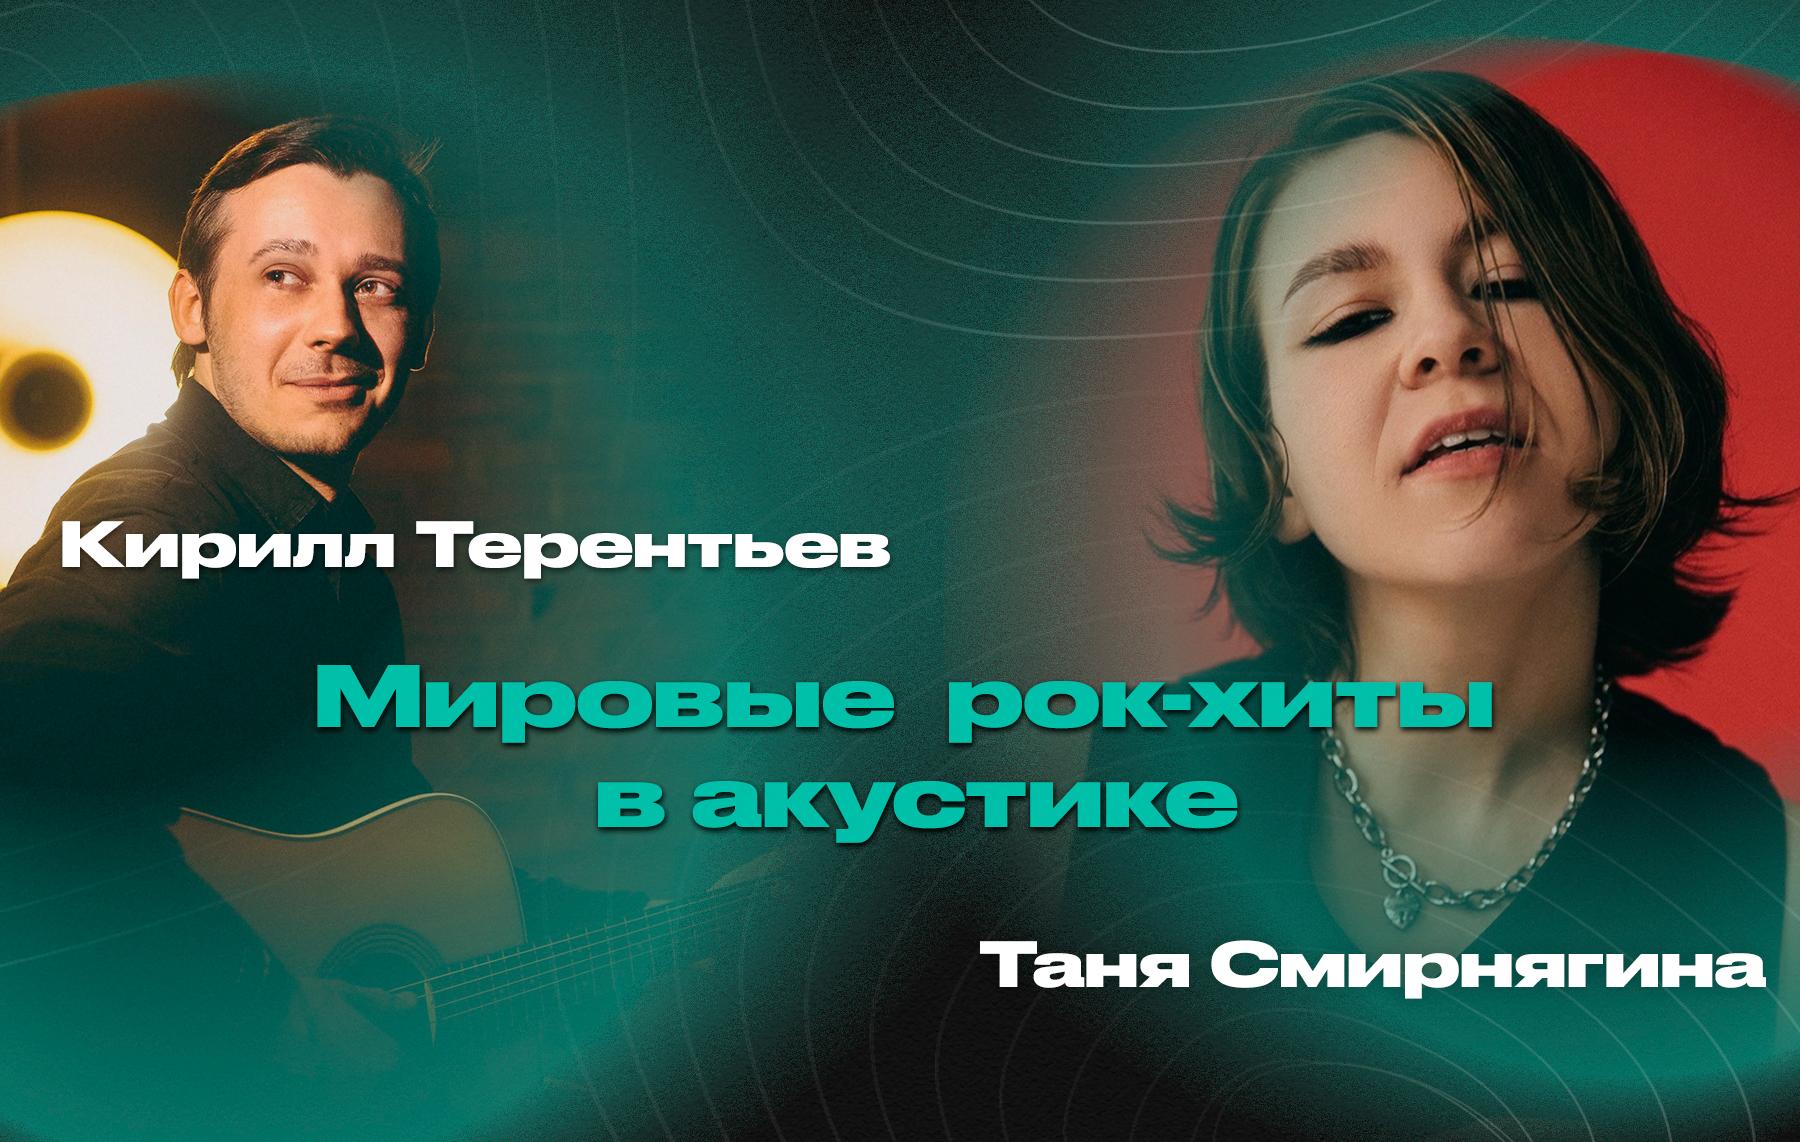 Мировые рок-хиты в акустике – Таня Смирнягина (вокал) и Кирилл Терентьев (гитара)